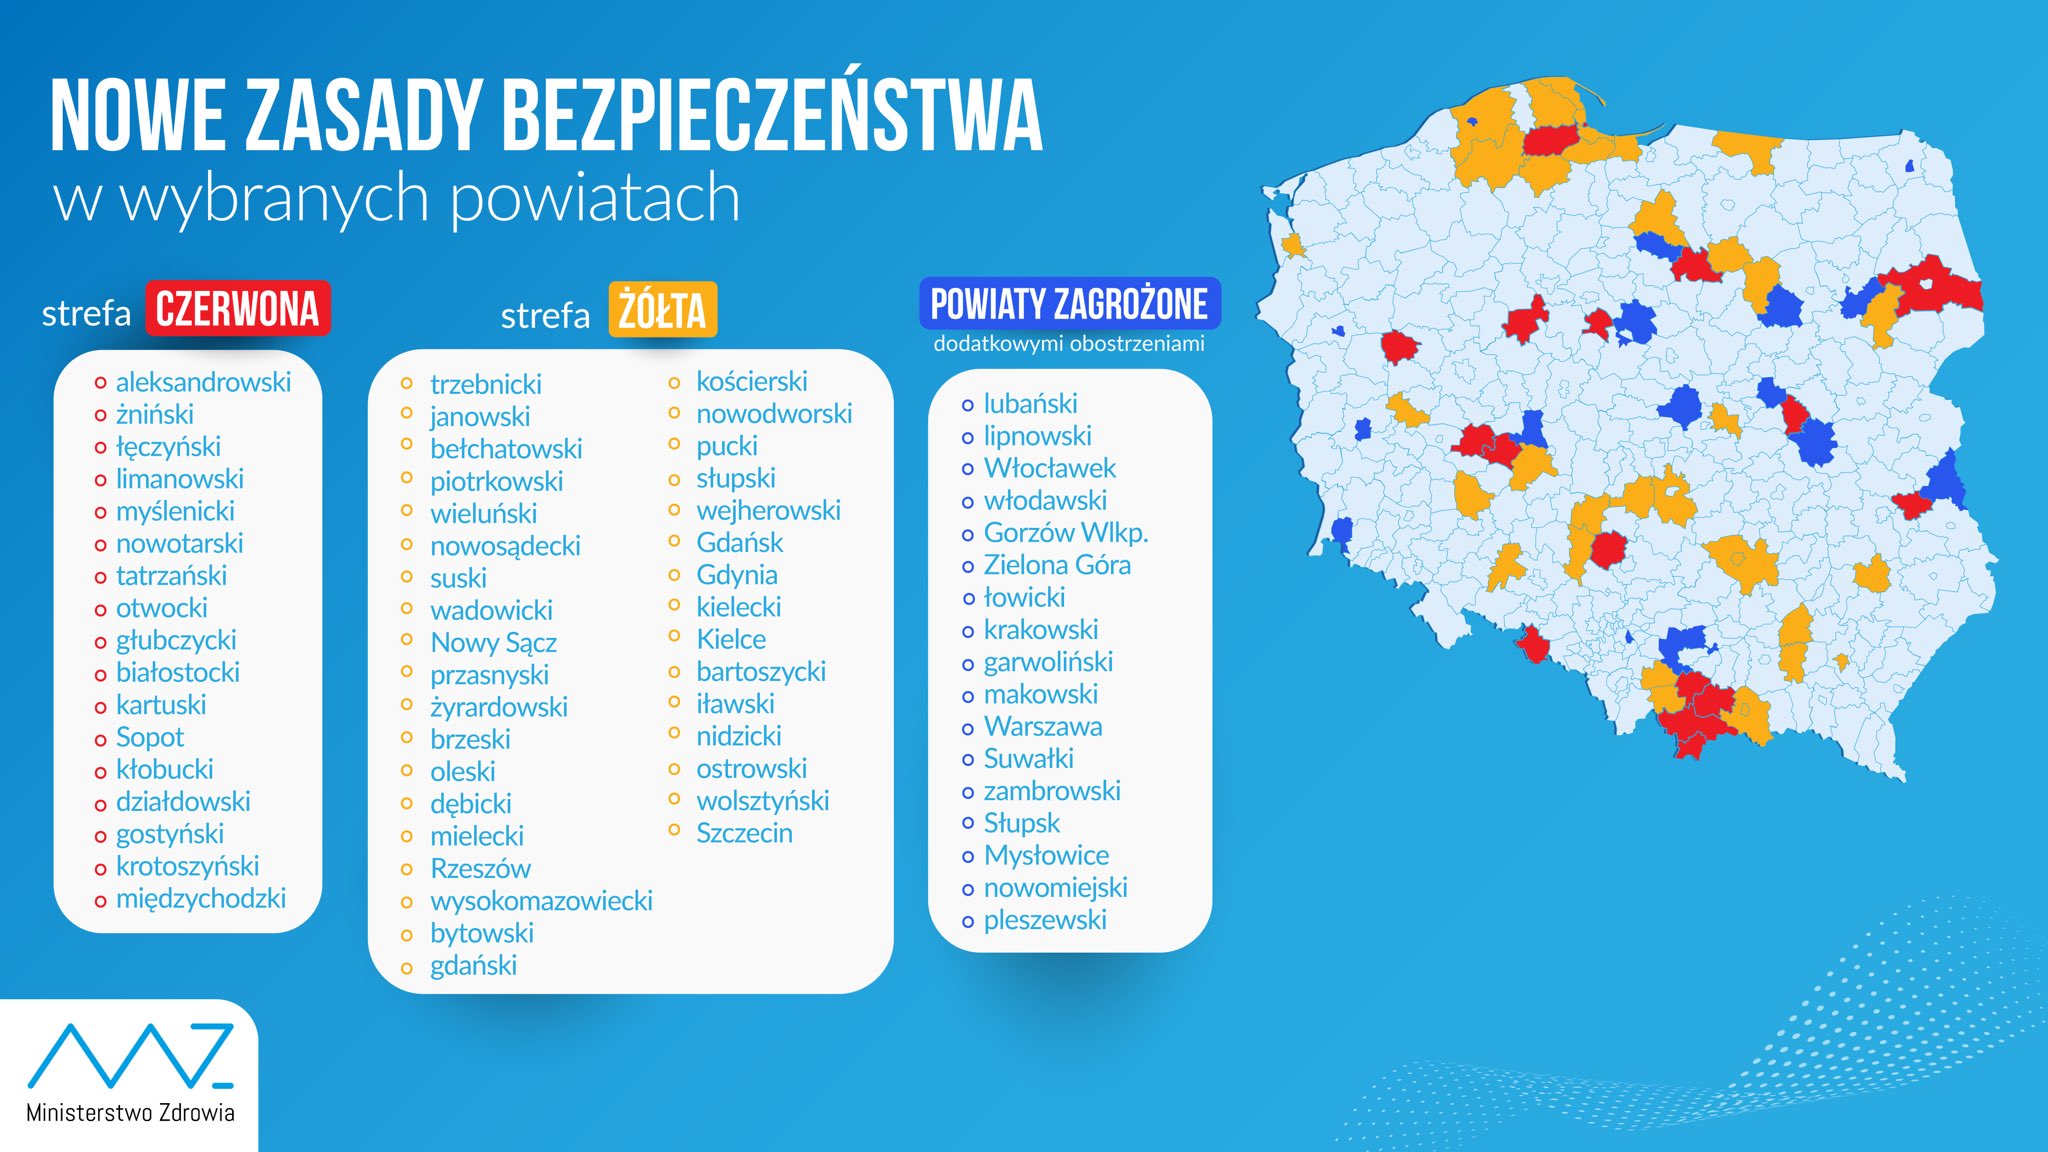 Plakat przedsatawiający mapę polski z zaznaczonymi powiatami znajdującymi się w streie czerwonej, zółtej oraz powiaty zagrożone. Trzy tabele z wypisanymi powiatami które zakwalifikowane są do strefy czerwonej, żółtej oraz powiaty zagrożone dodatkowymi obostrzeniami